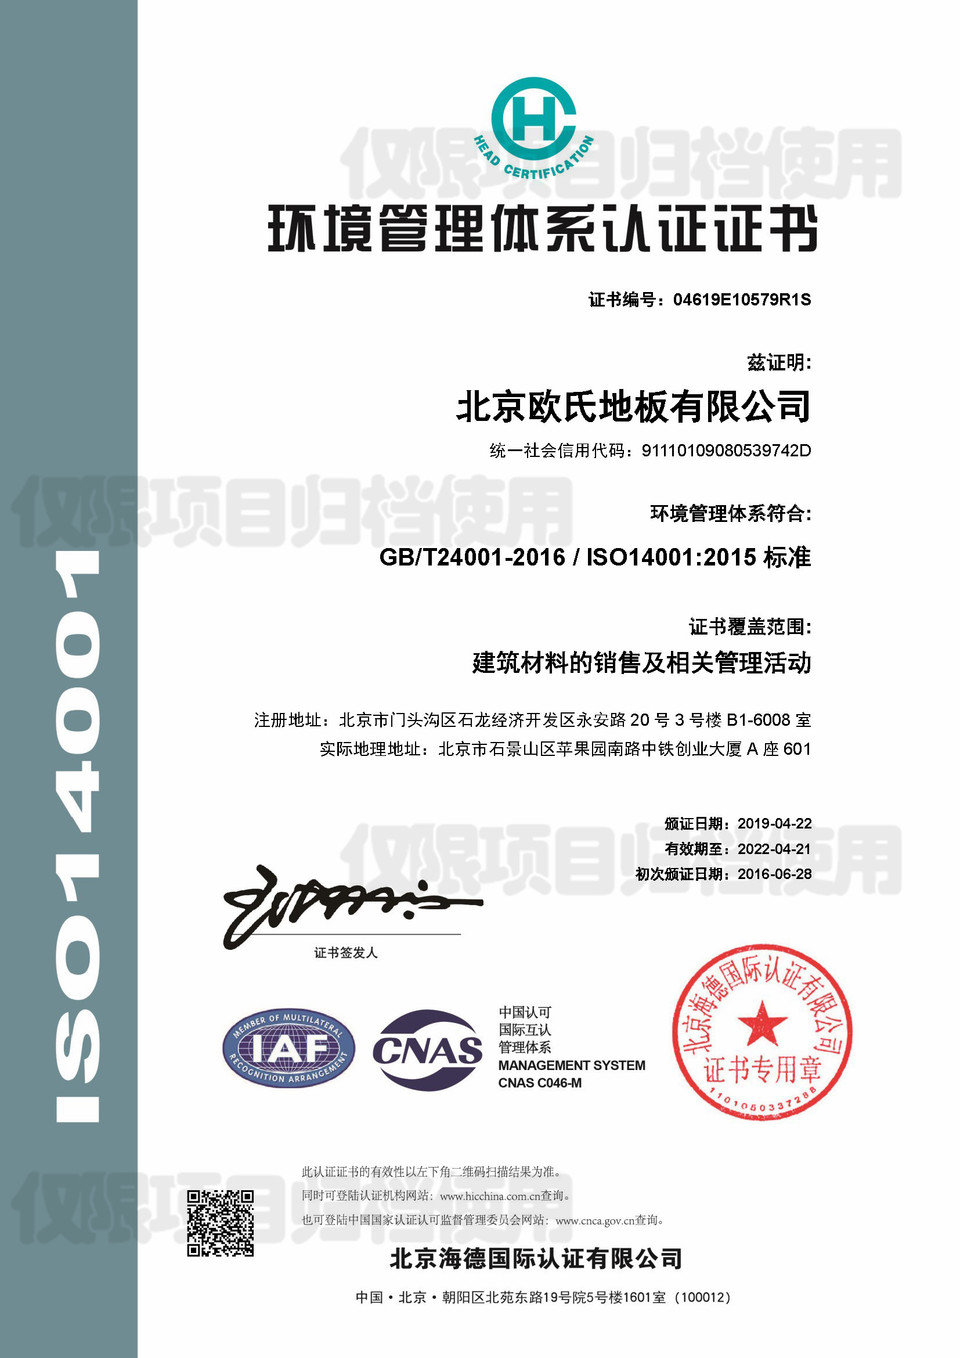 环境管理体系认证证书ISO14001